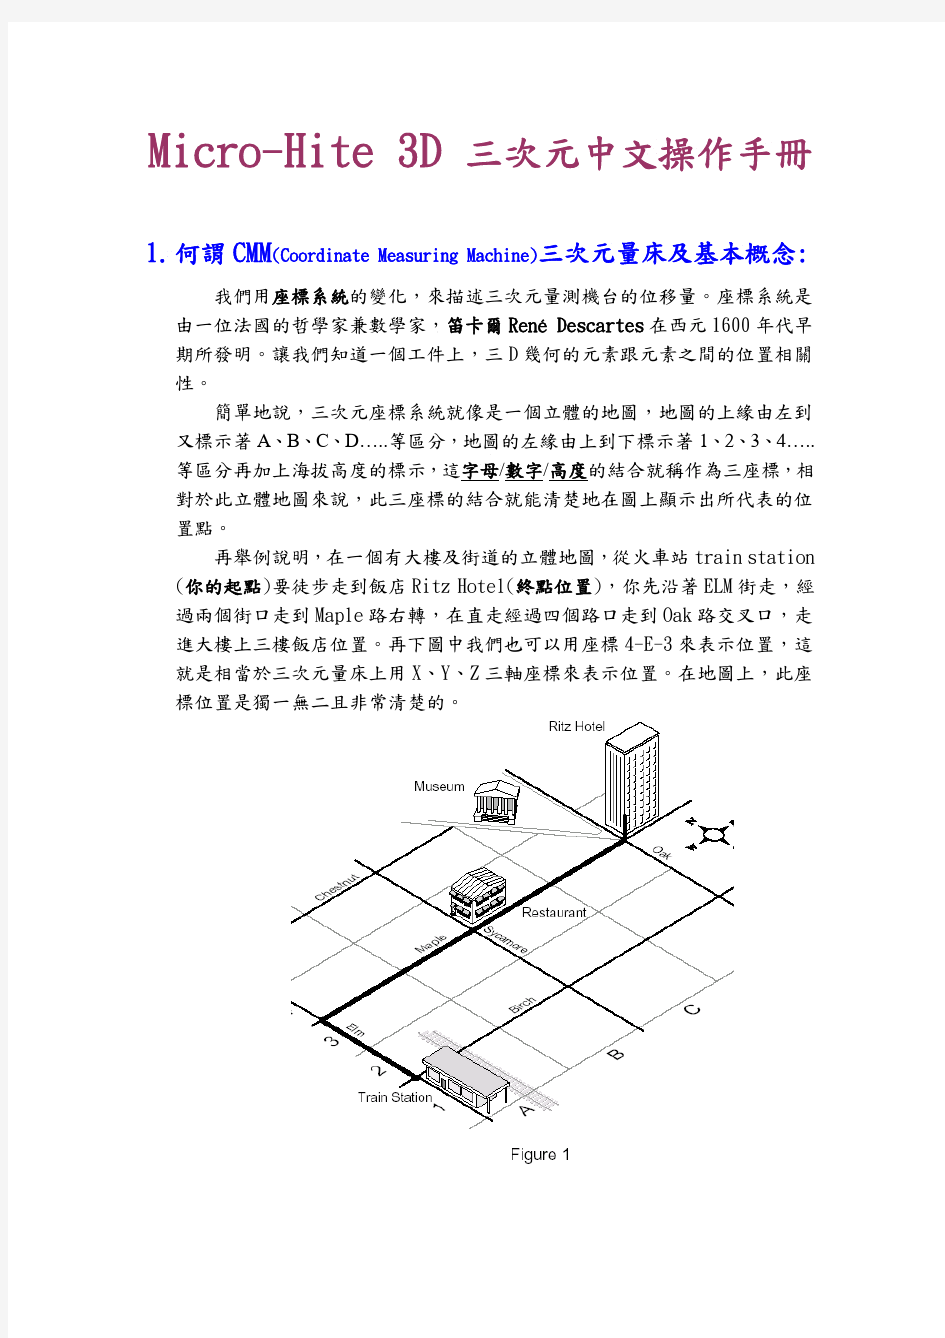 Micro-Hite_3D三次元操作手册